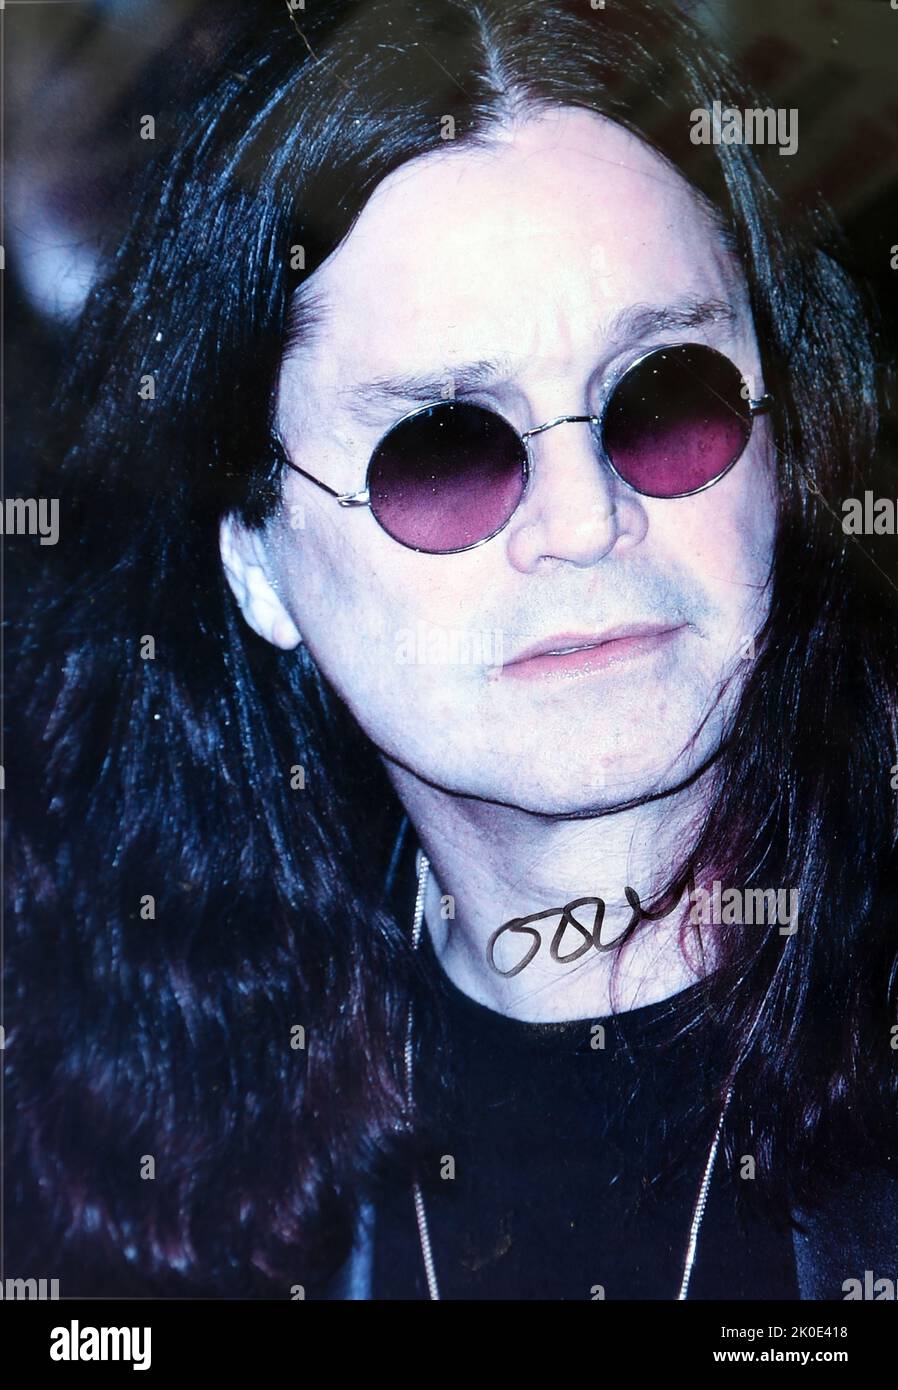 John Michael 'Ozzy' Osbourne (nacido en 1948) es un cantante, compositor y personalidad televisiva inglesa. Él subió a la prominencia durante la década de 1970s como el vocalista principal de la banda de heavy metal Black Sabbath, durante cuyo período él adoptó el apodo 'Prince of Darkness'. Foto de stock